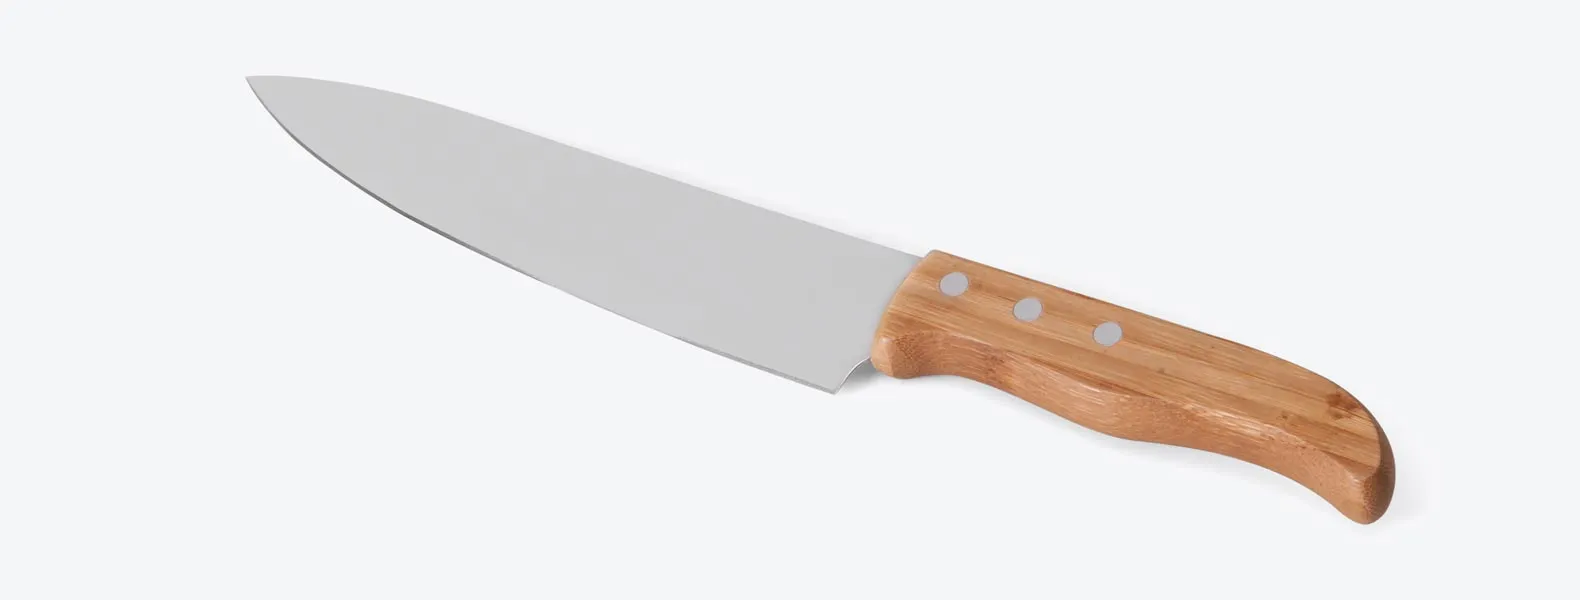 Kit de Faca em Bambu/Aço Inox com faca 8'' e garfo em Bambu/Inox. Rebites em Aço Inox 304, um dos mais resistentes à ferrugem e corrosão. Como cortesia, na faca 8 fazemos uma gravação com os cortes do boi.